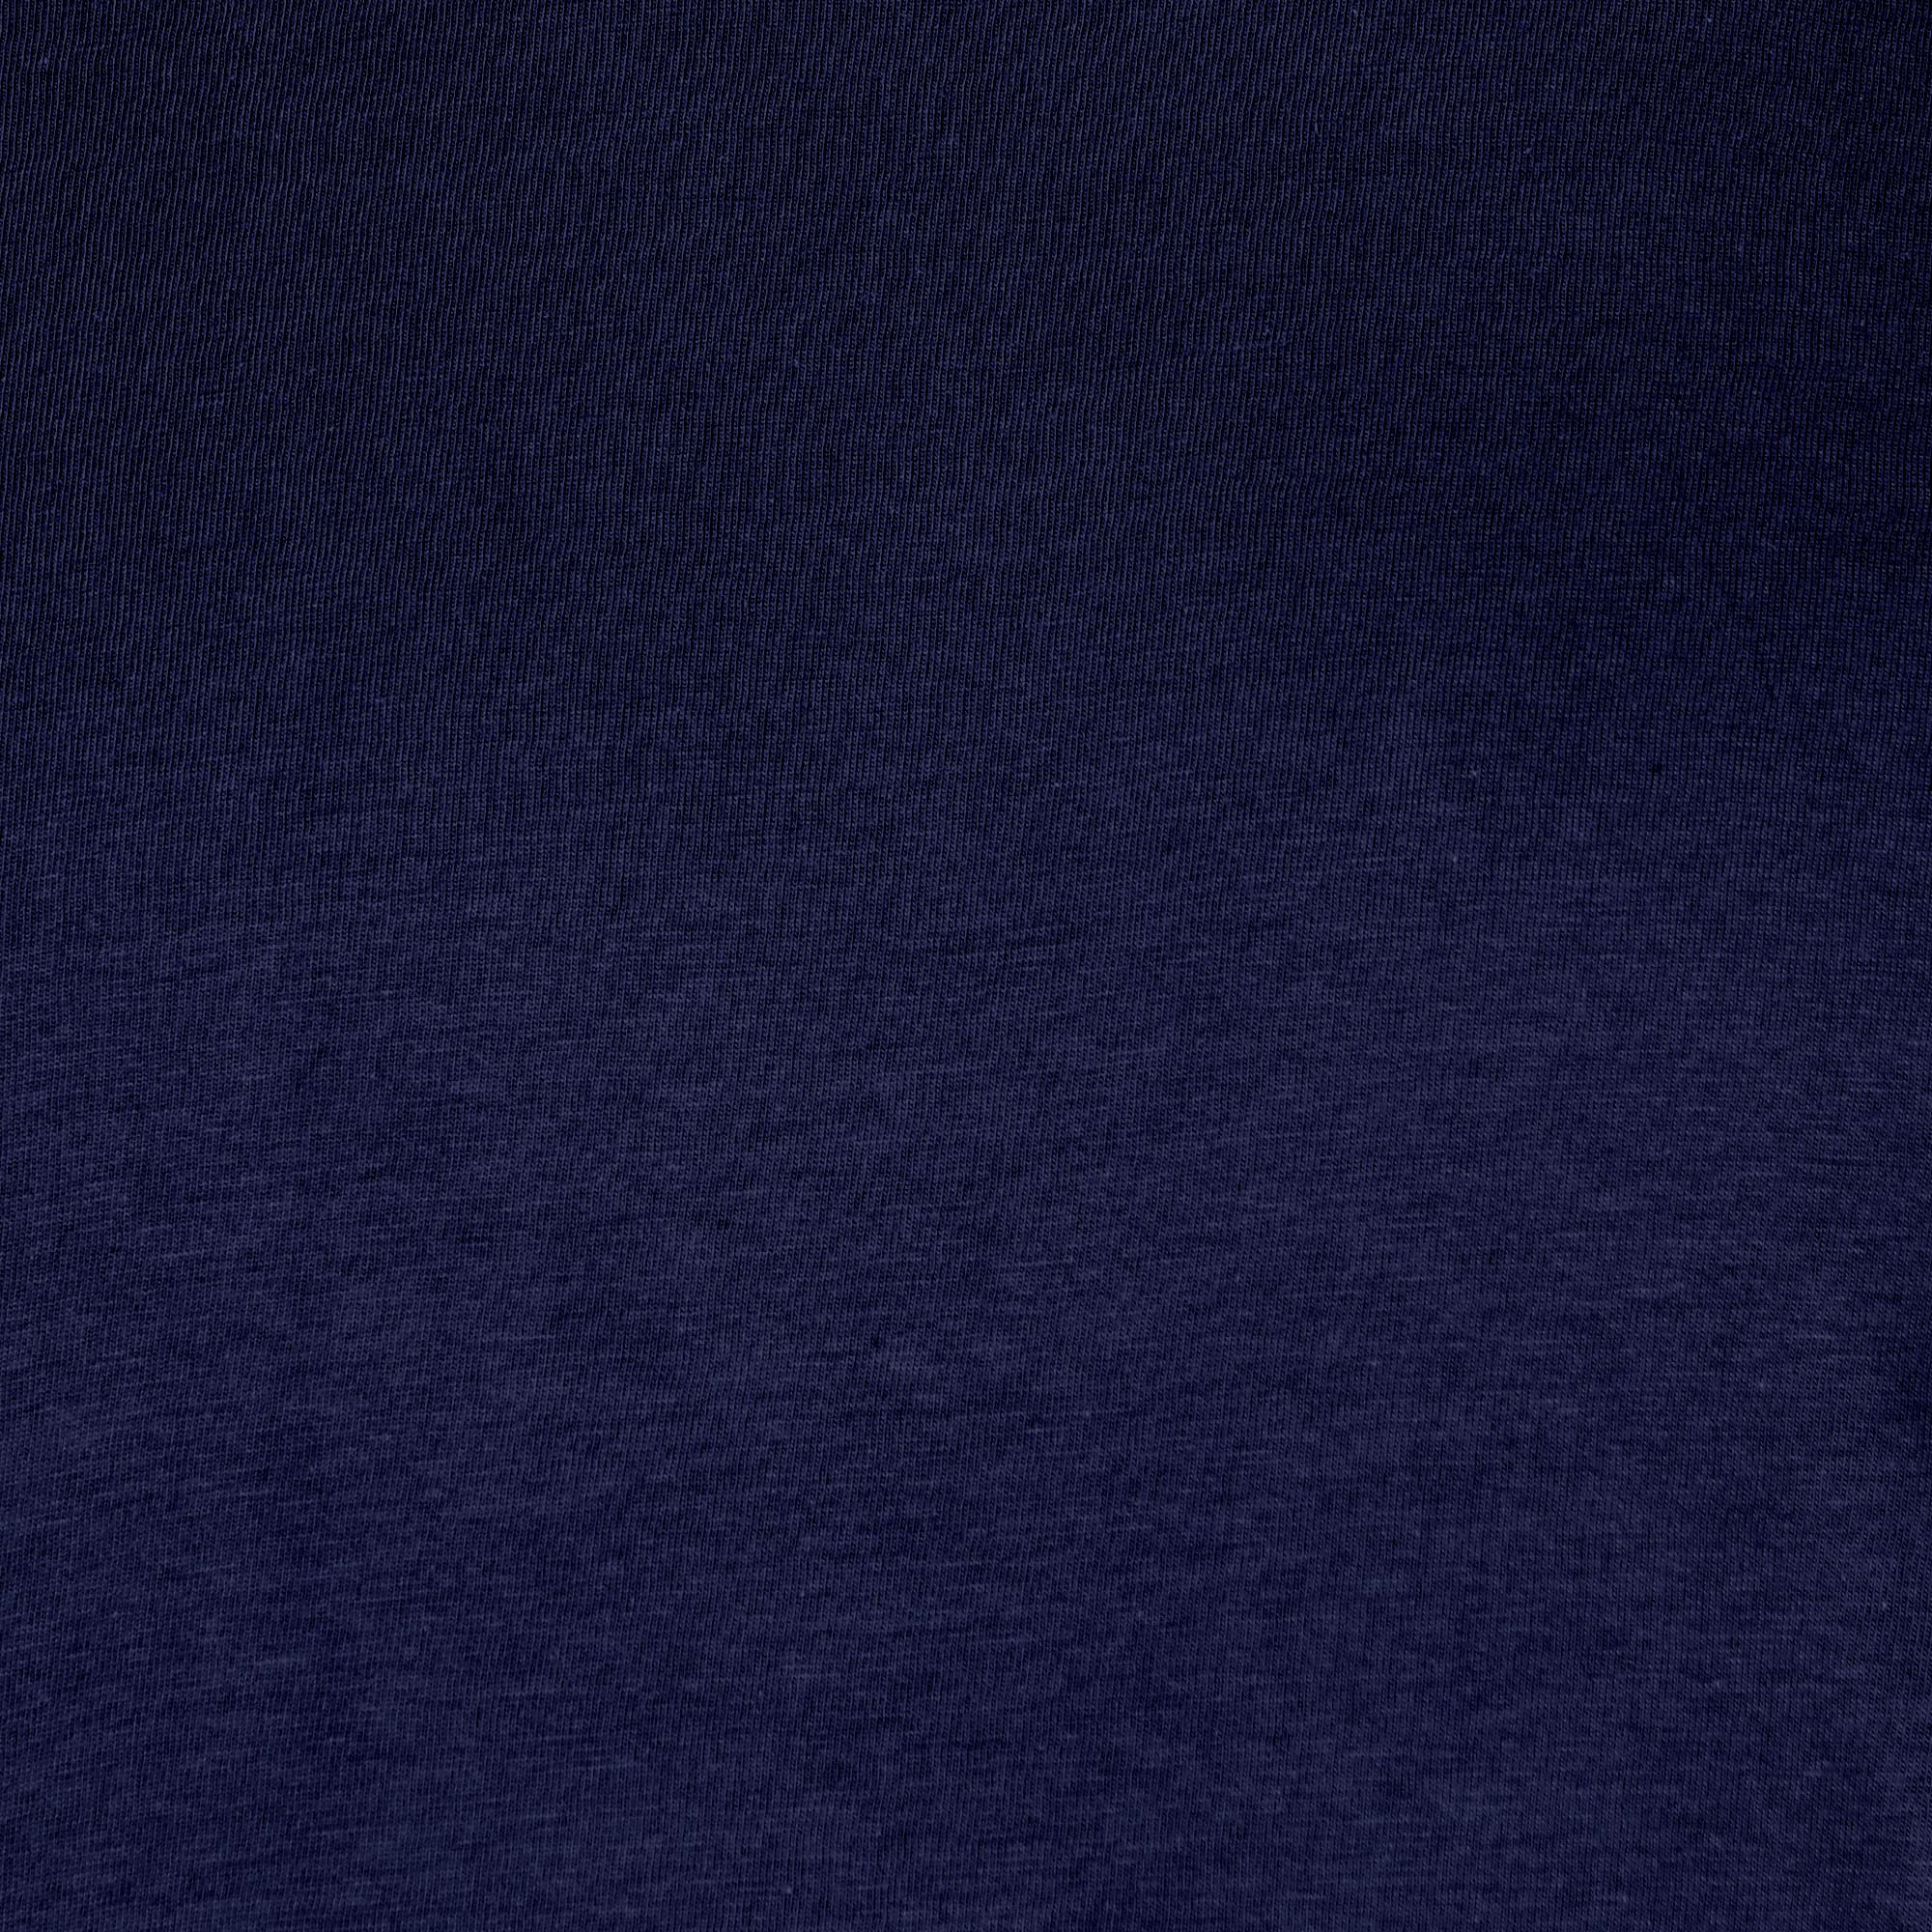 Мужская футболка Diva Teks синяя (DTD-05), цвет синий, размер 52-54 - фото 5